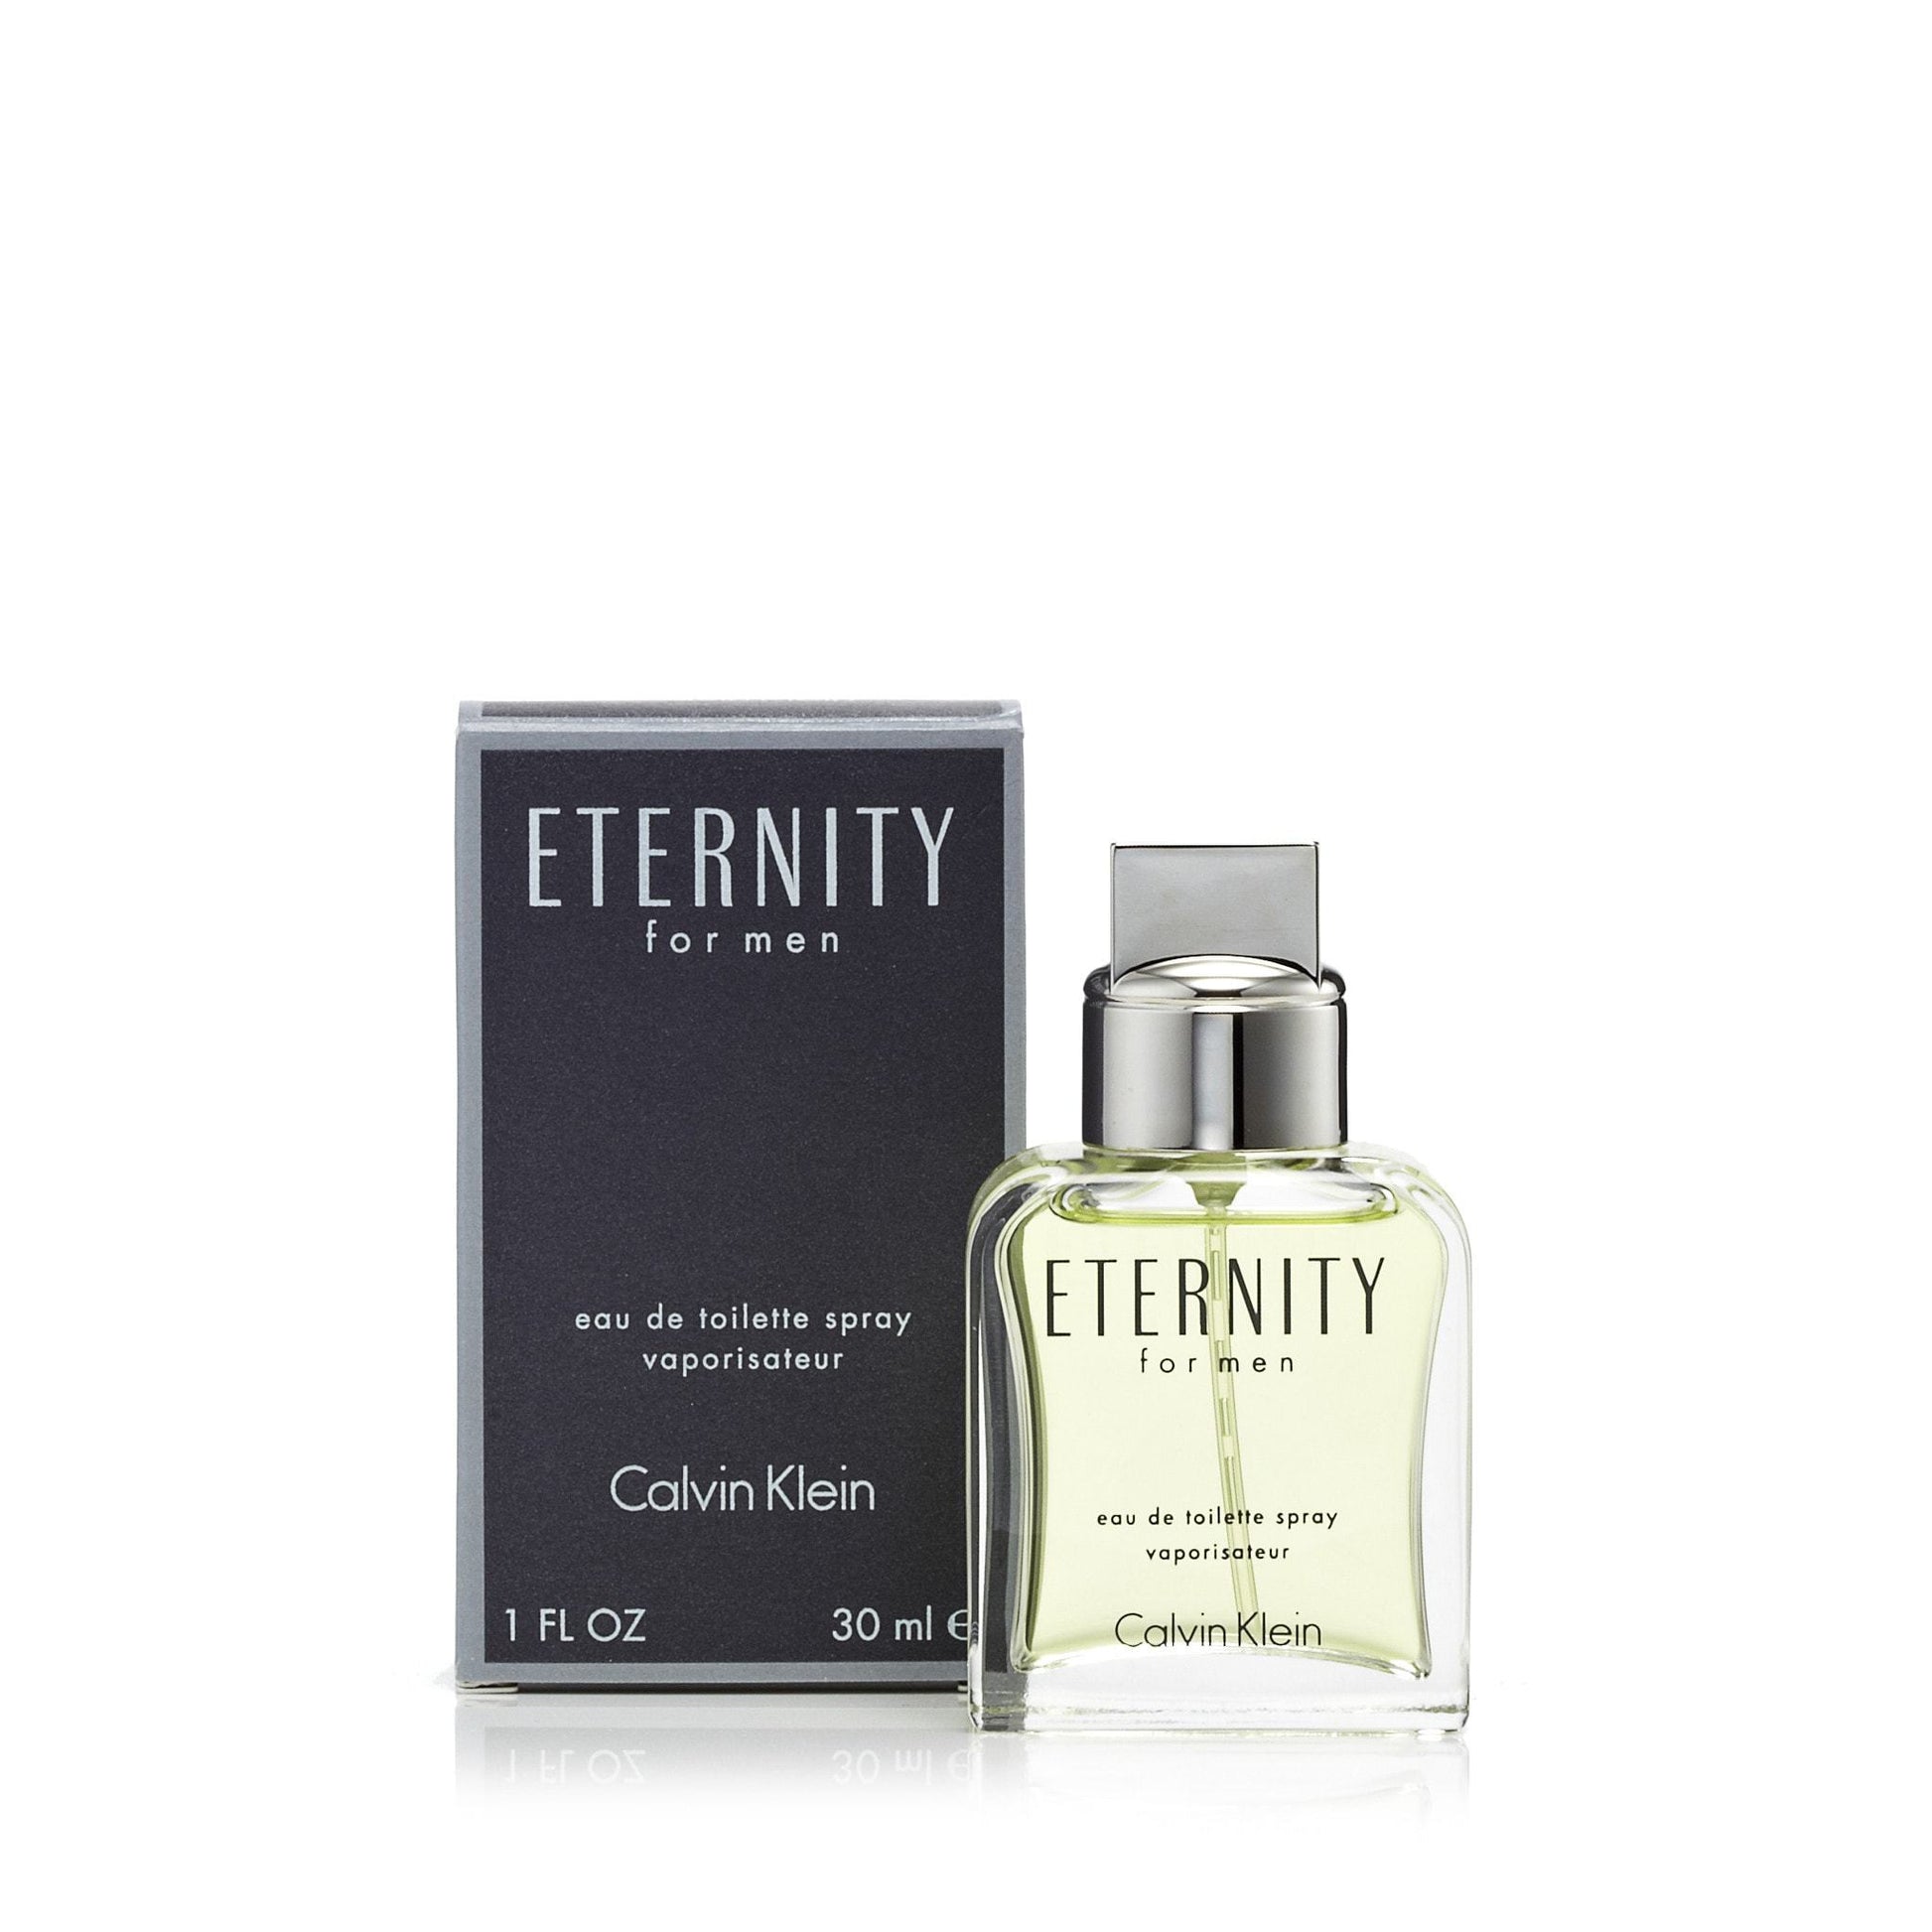 Eternity Eau de Toilette Spray for Men by Calvin Klein, Product image 6